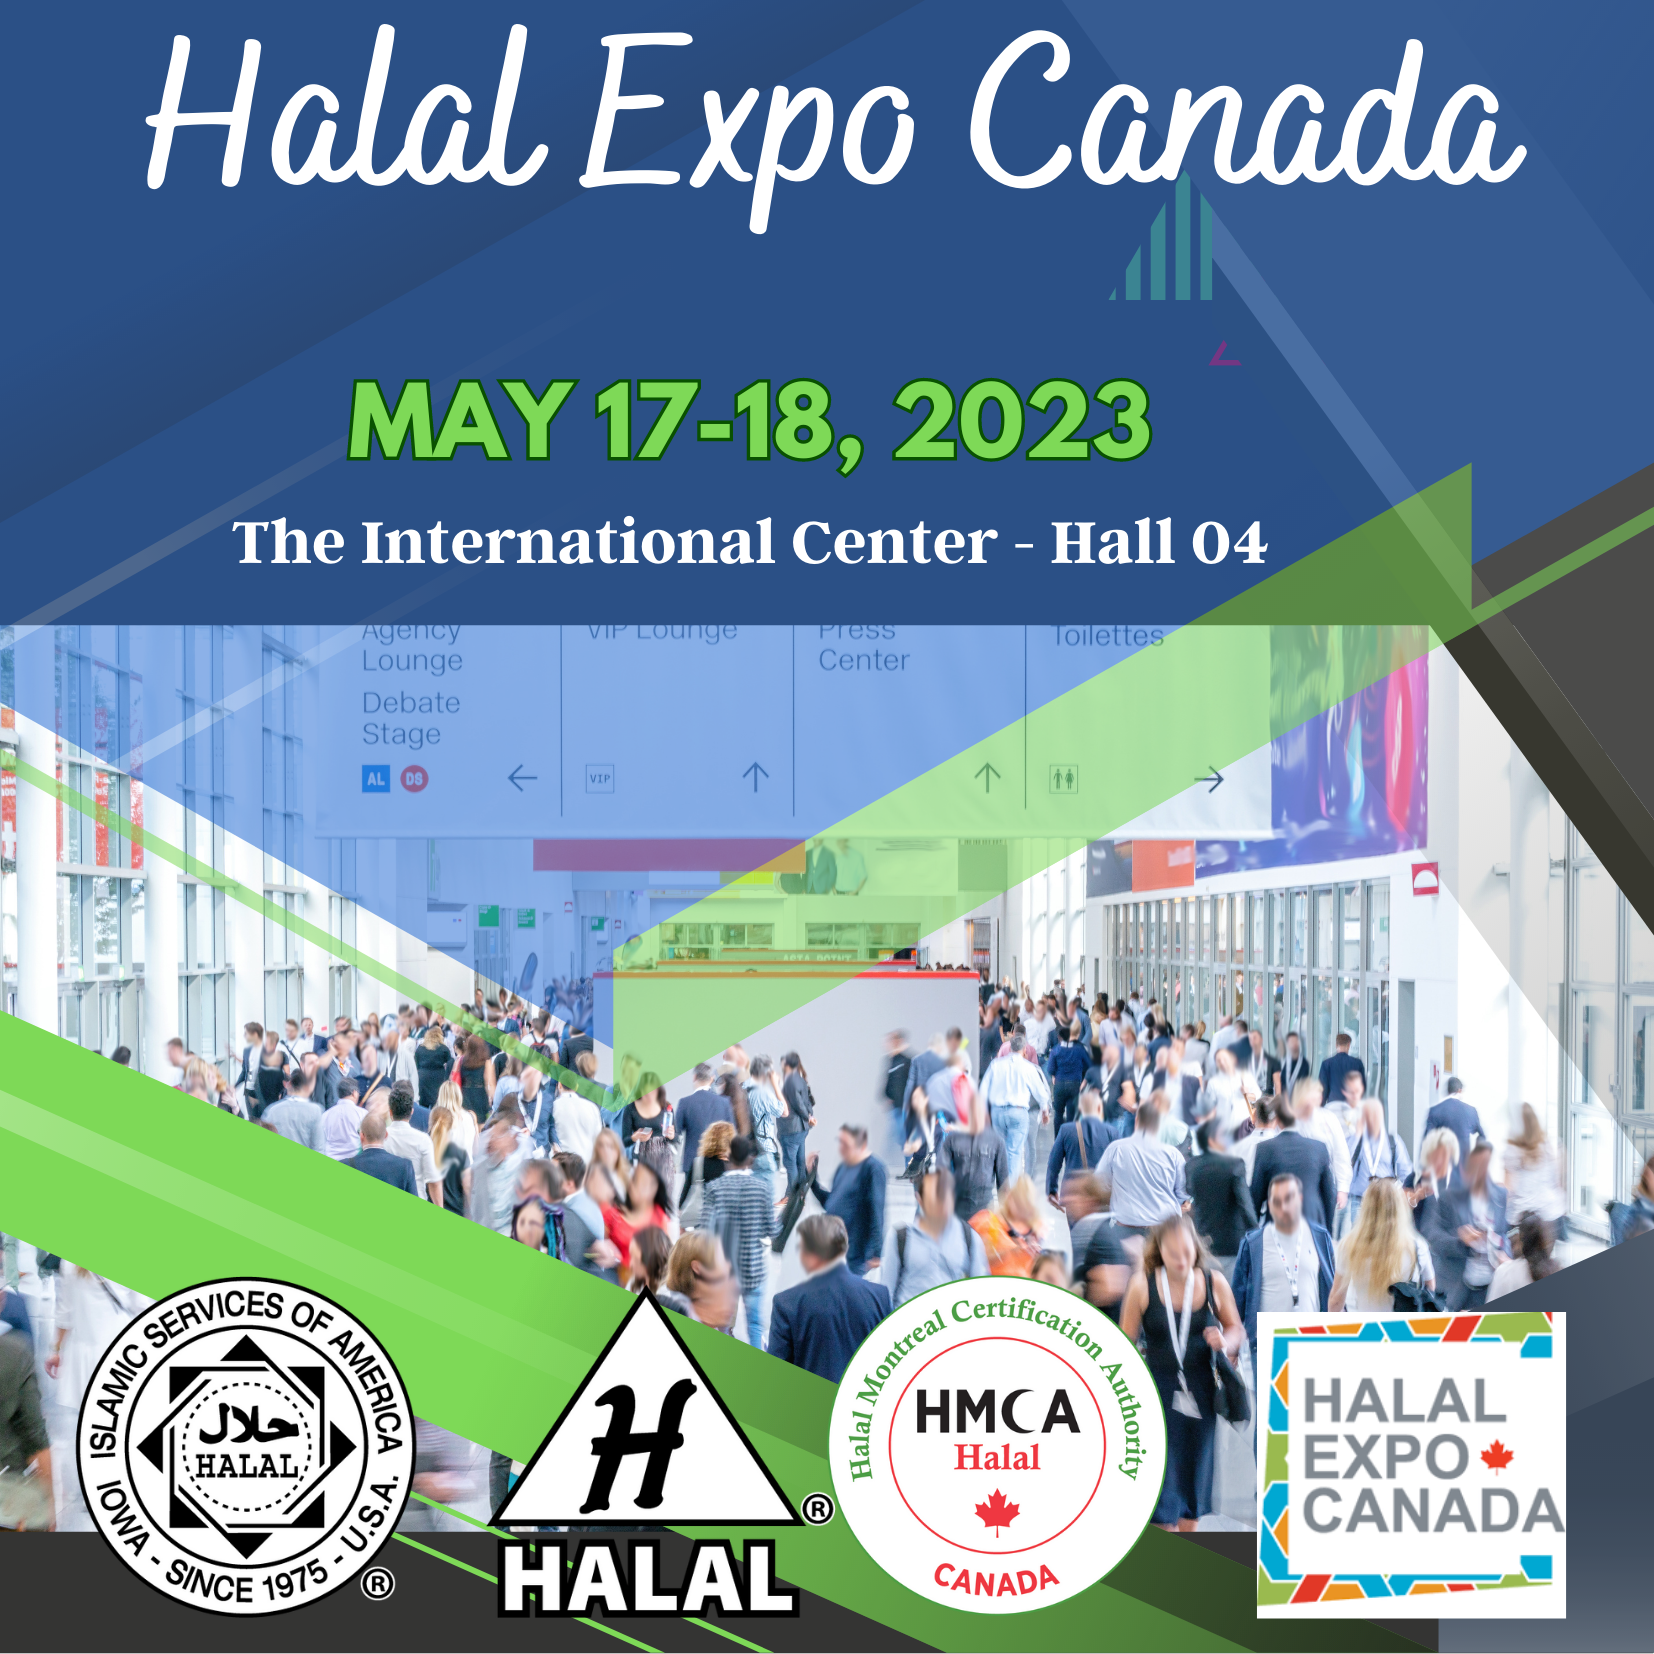 Halal Expo Canada 2023 